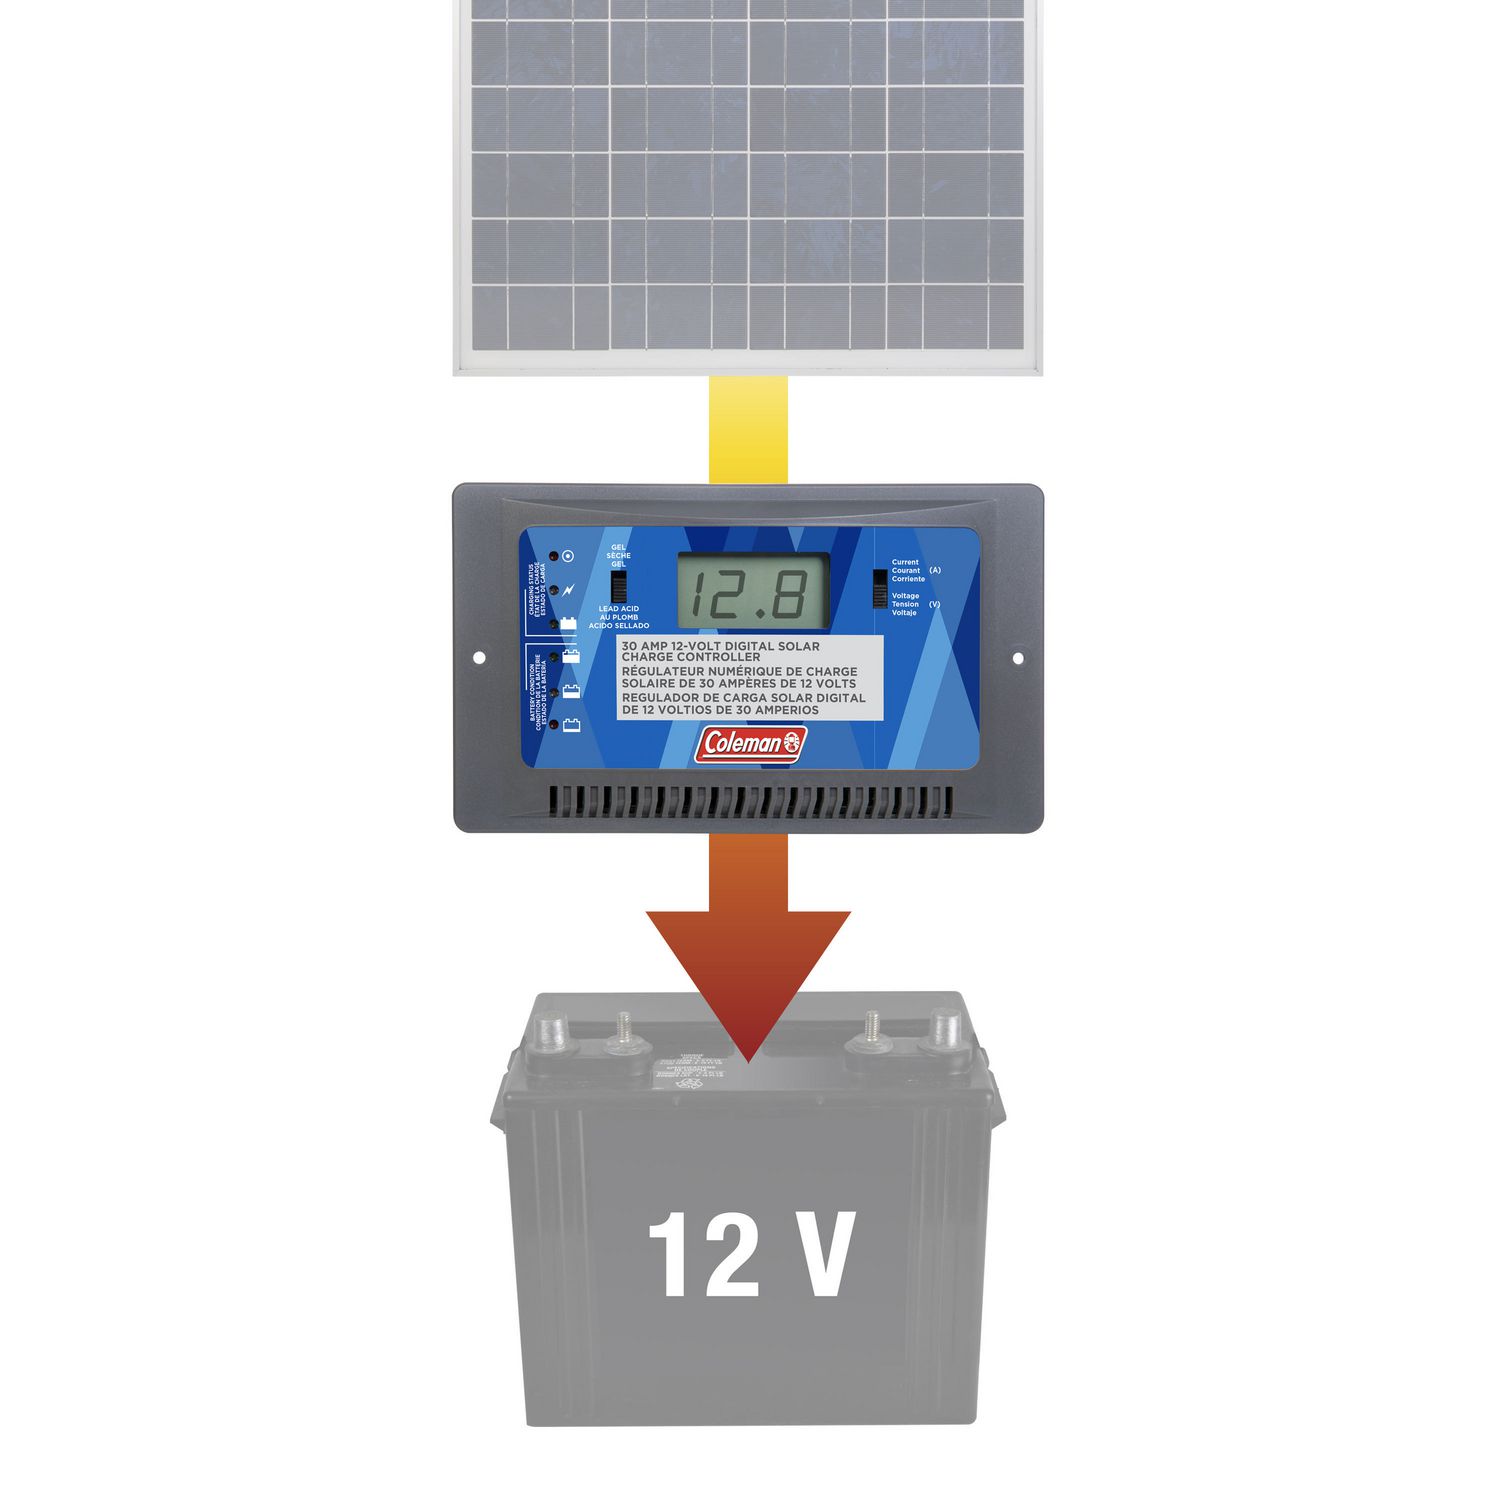 Approvisionneur solaire de batterie 6 W, 12 V de Coleman 